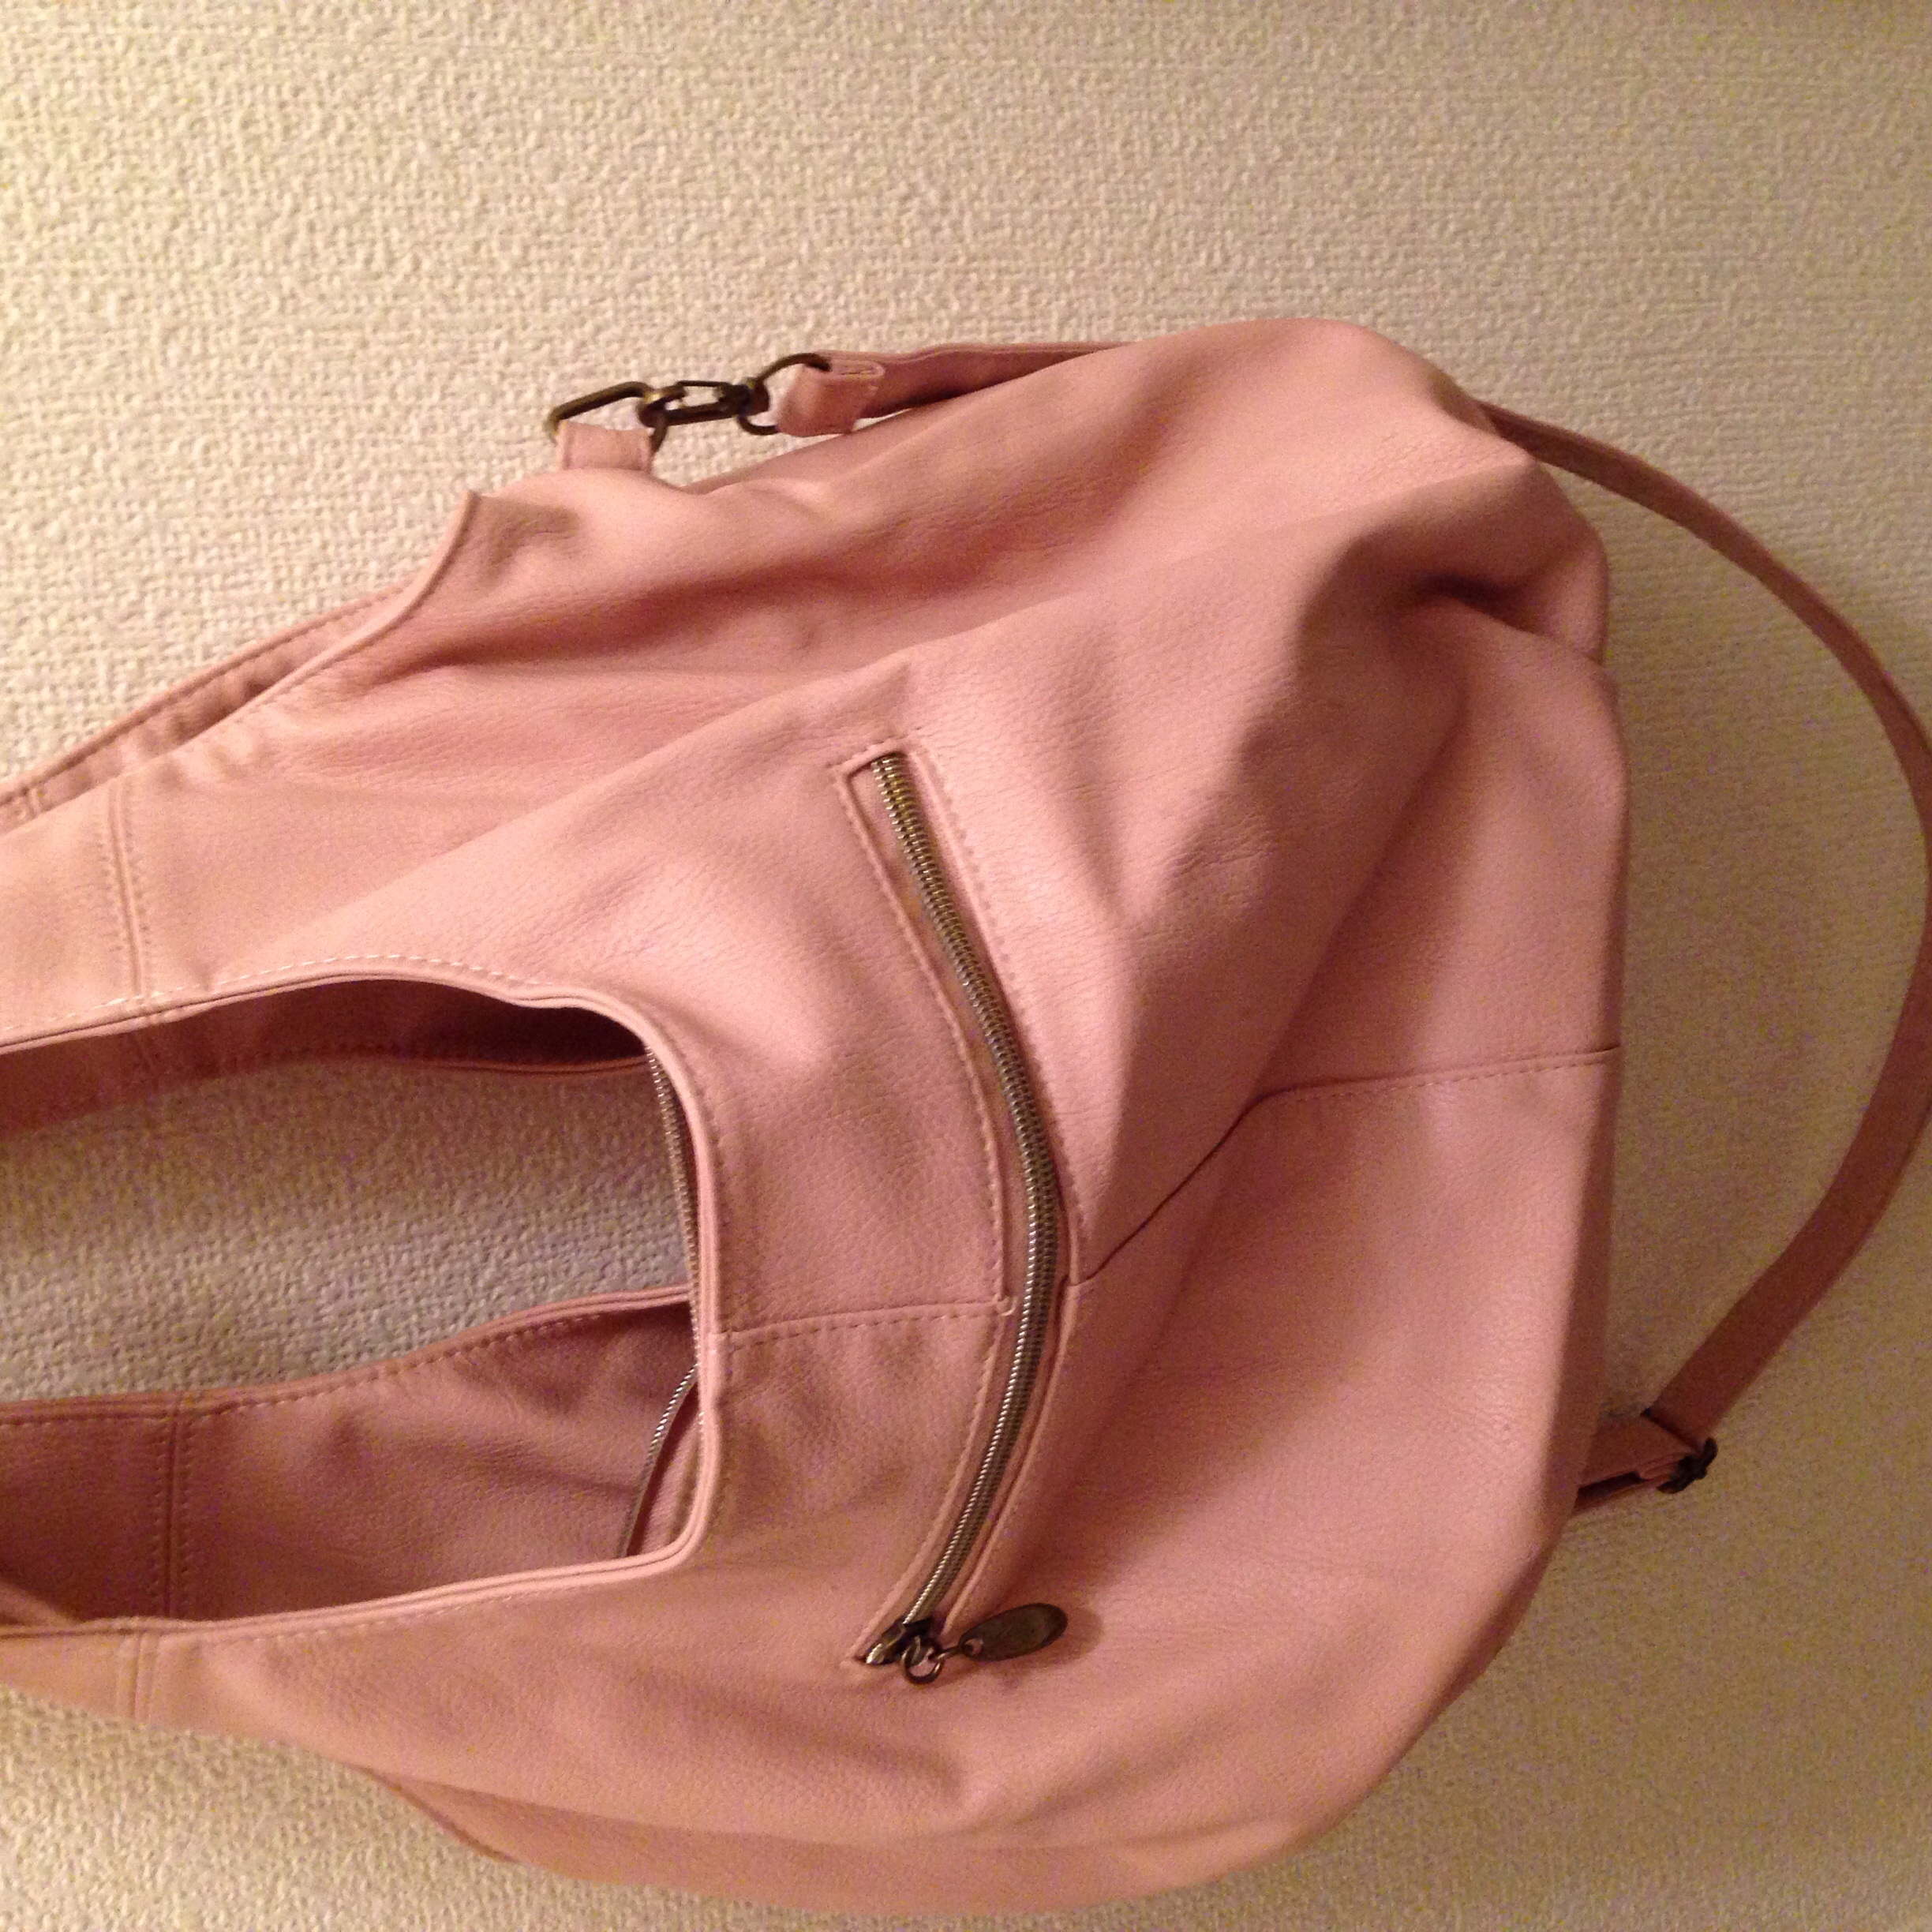 バッグ2大人っぽいピンク柔らかいです